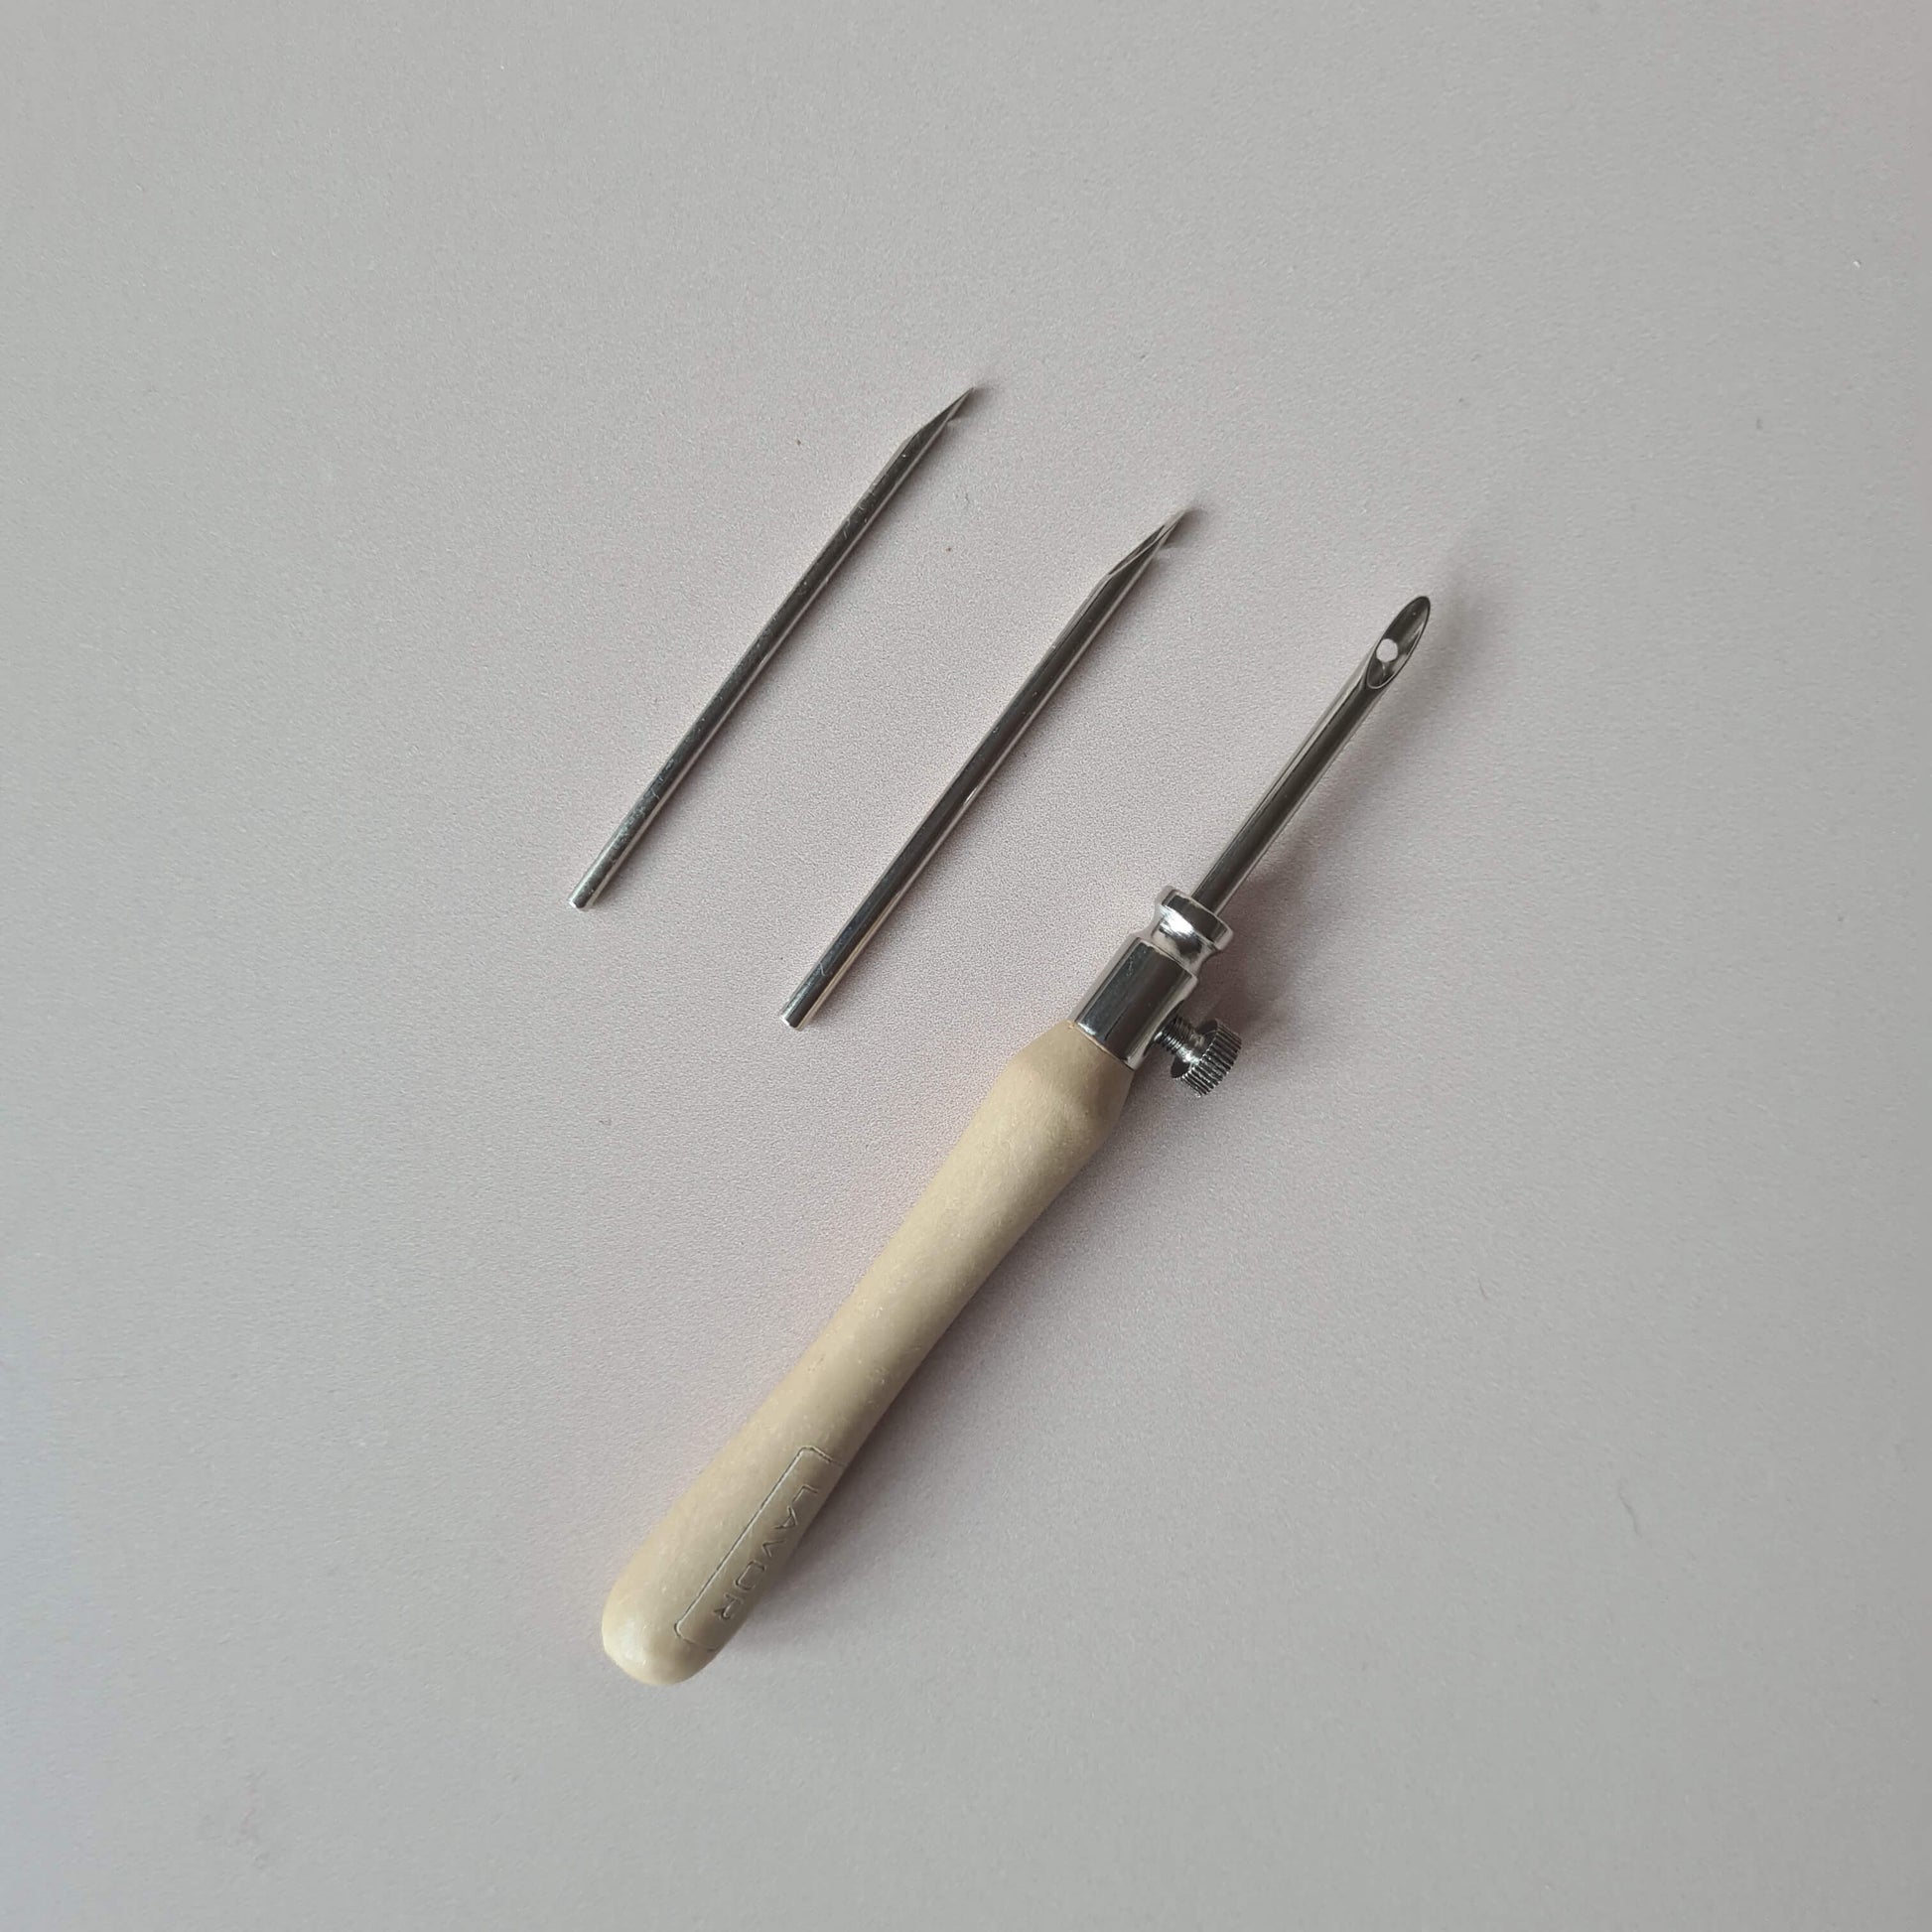 Lavor fine punch needle set